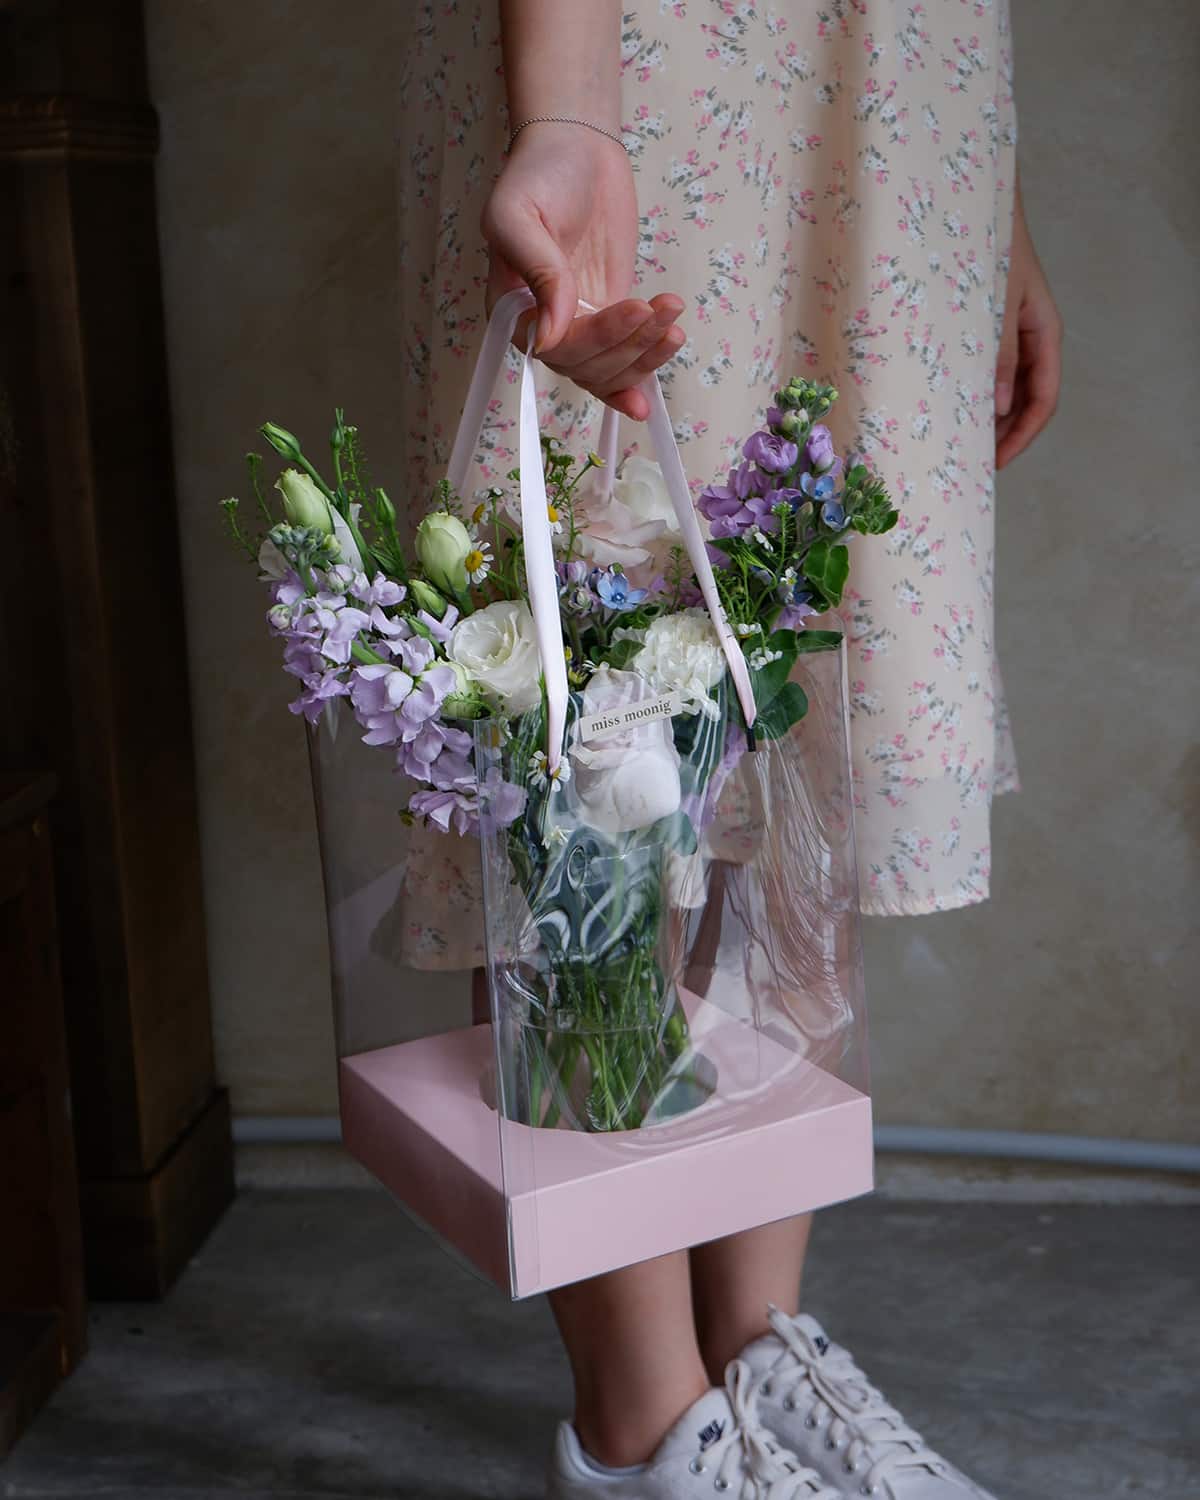 KL online flower delivery, Mothers day flower, Mix flower in vase